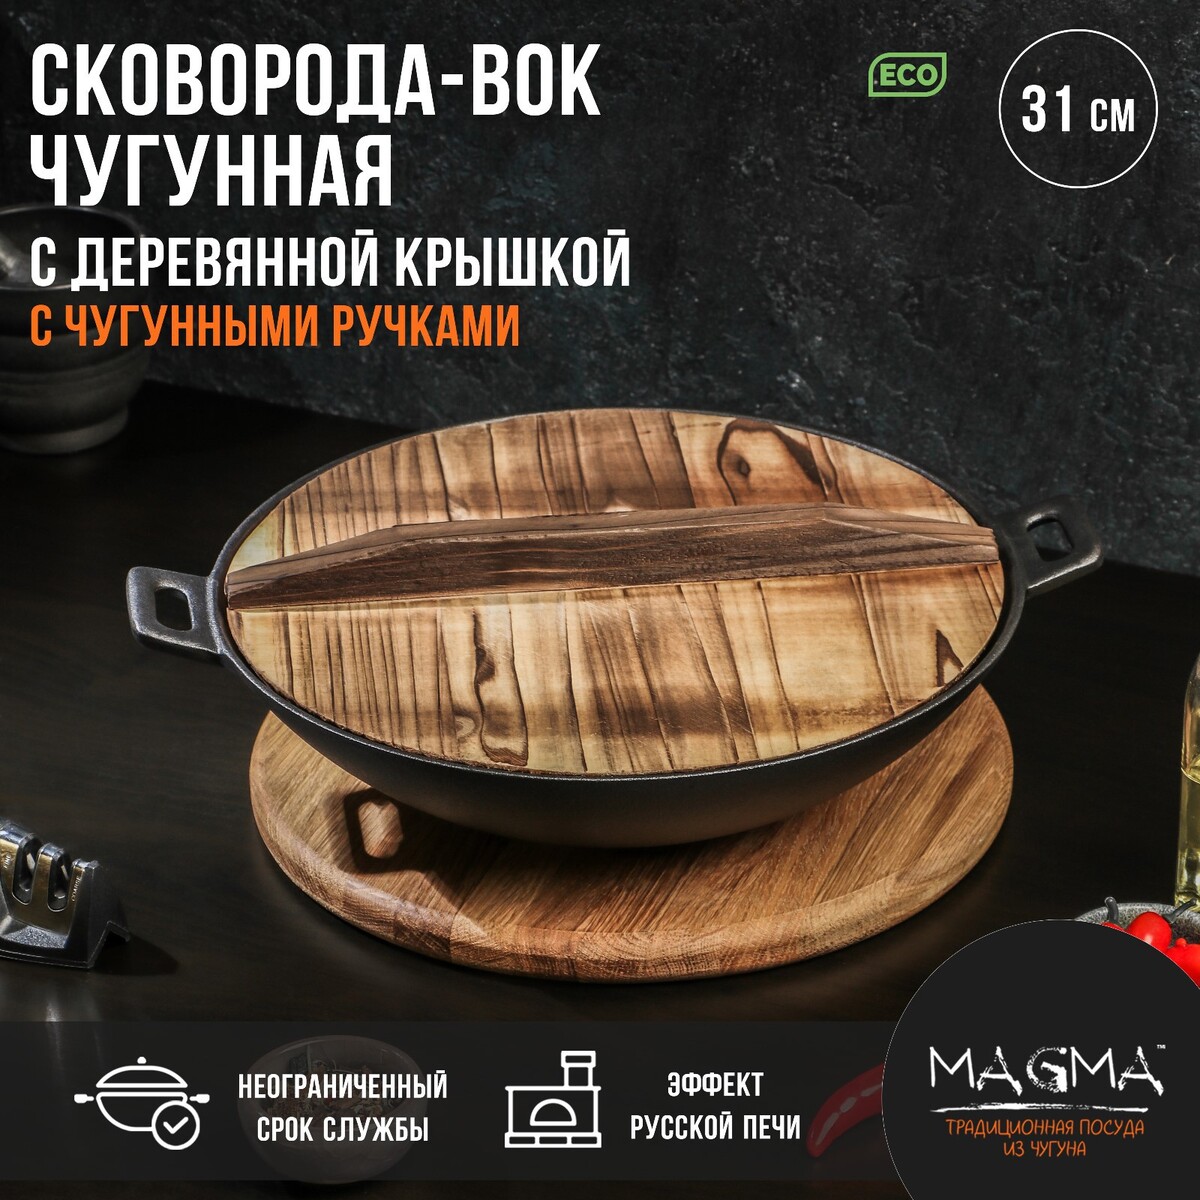 Сковорода-вок чугунная magma сковорода чугунная на деревянной подставке magma